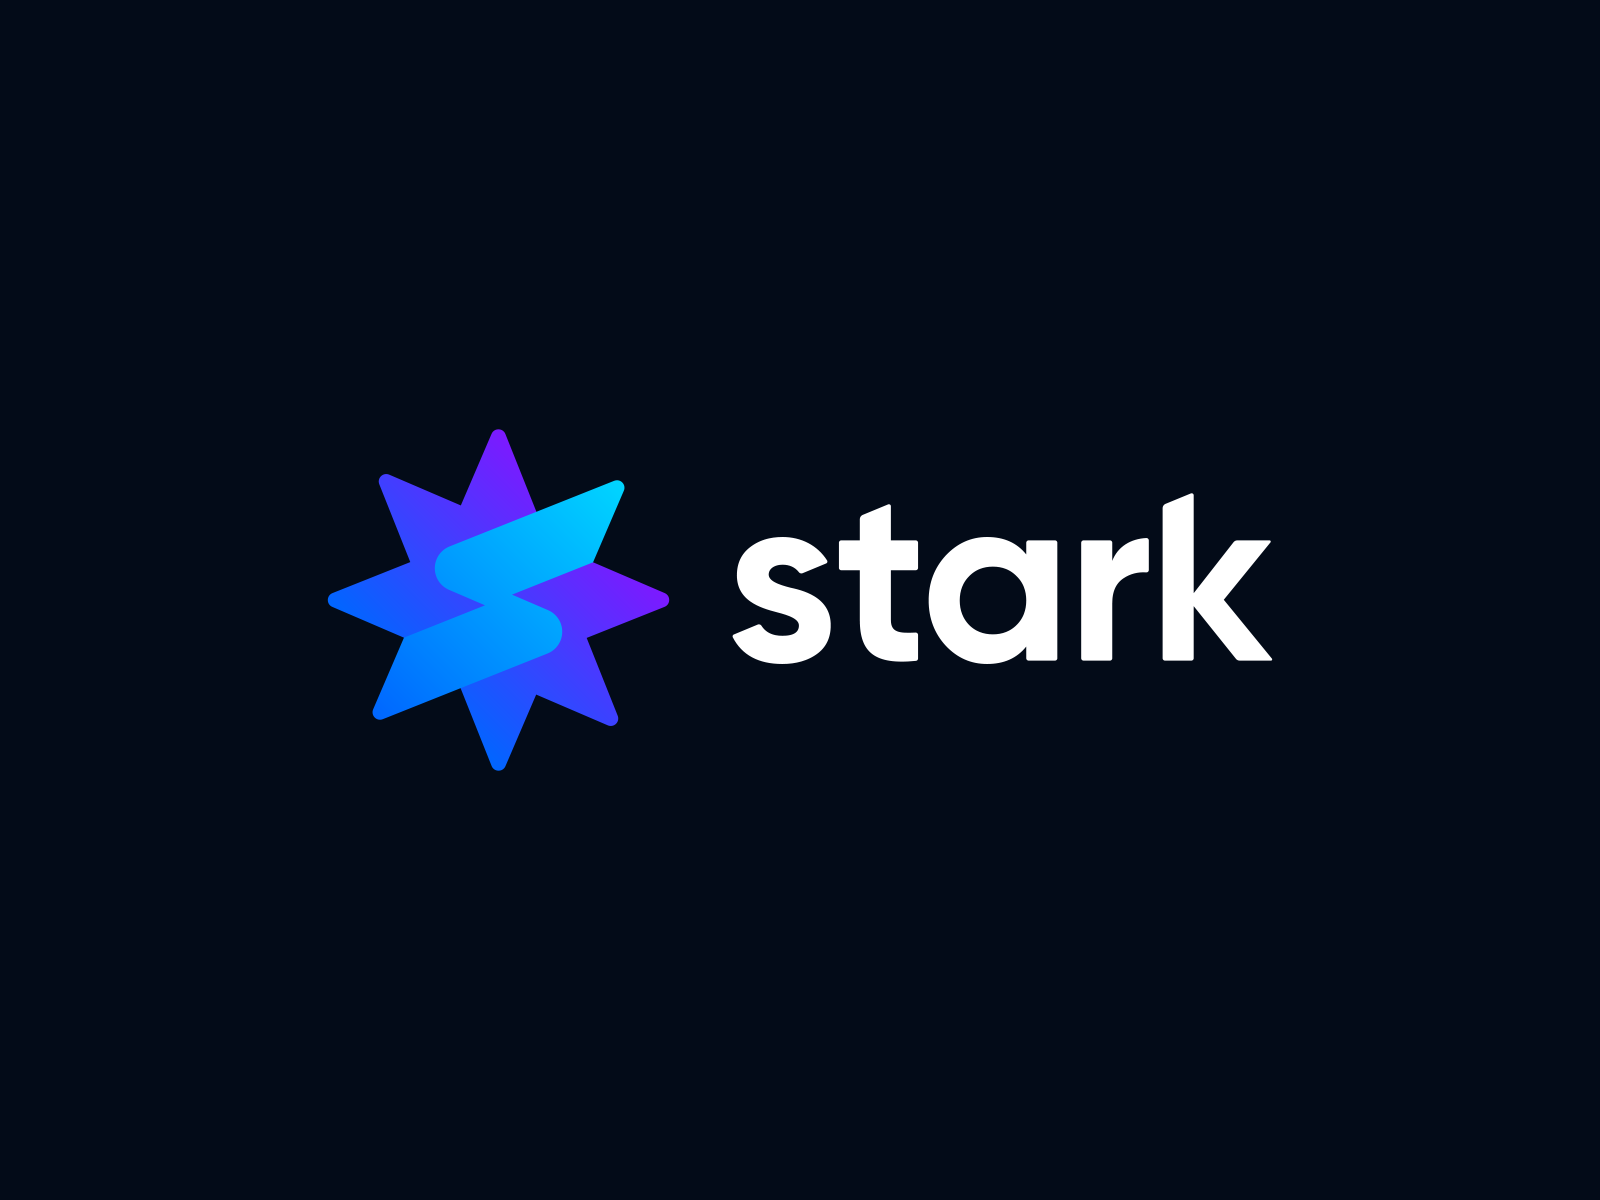 stark logo design